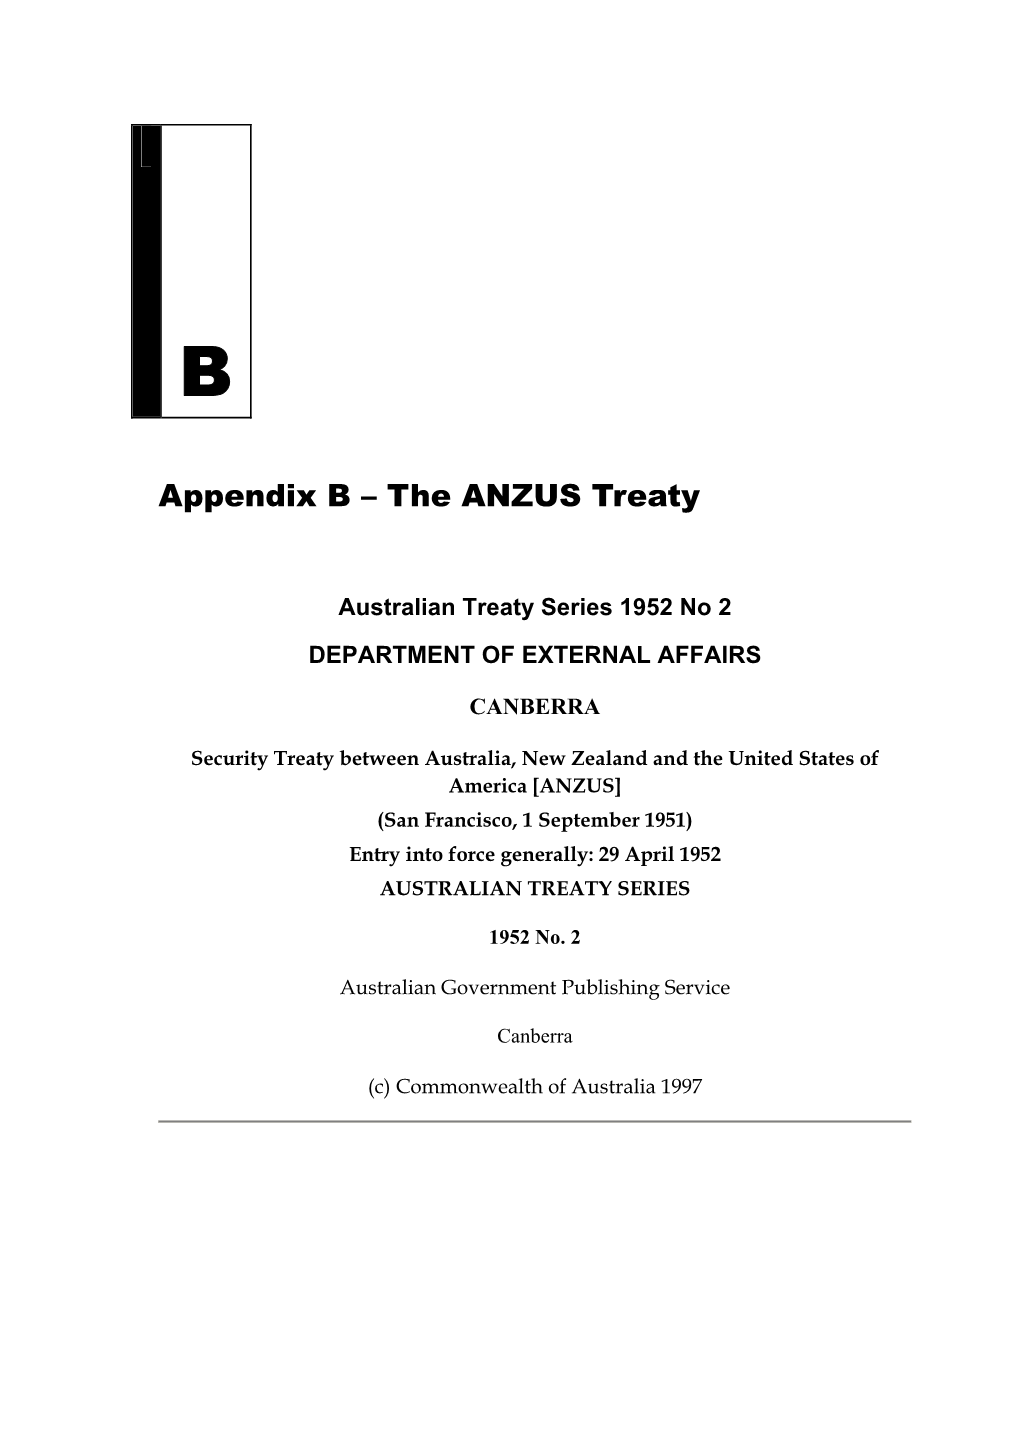 Appendix B: the ANZUS Treaty